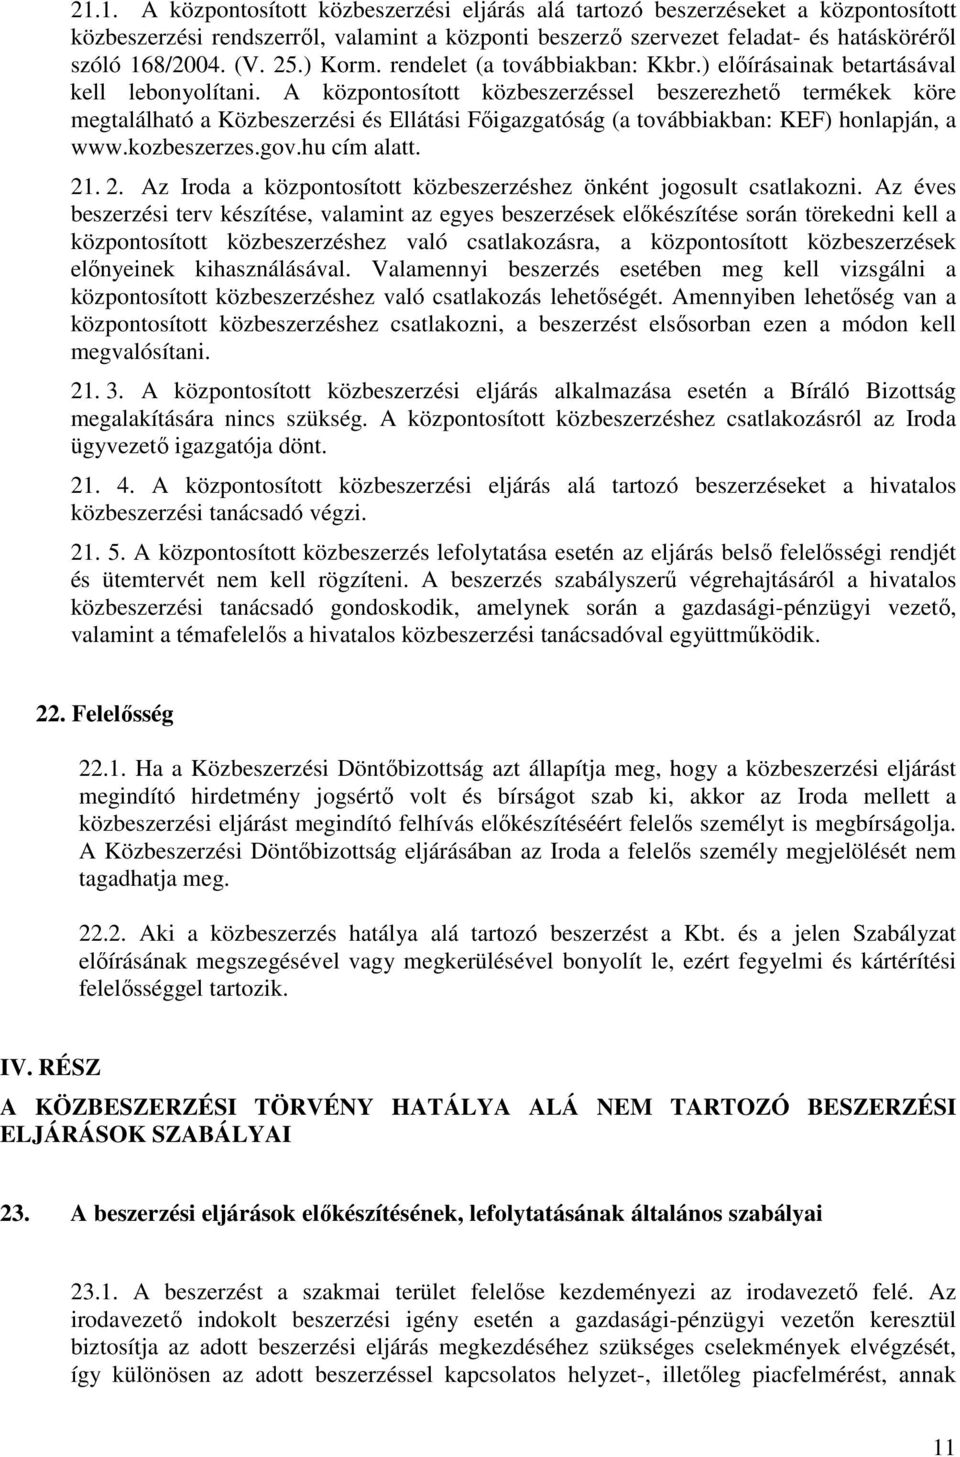 A központosított közbeszerzéssel beszerezhető termékek köre megtalálható a Közbeszerzési és Ellátási Főigazgatóság (a továbbiakban: KEF) honlapján, a www.kozbeszerzes.gov.hu cím alatt. 21